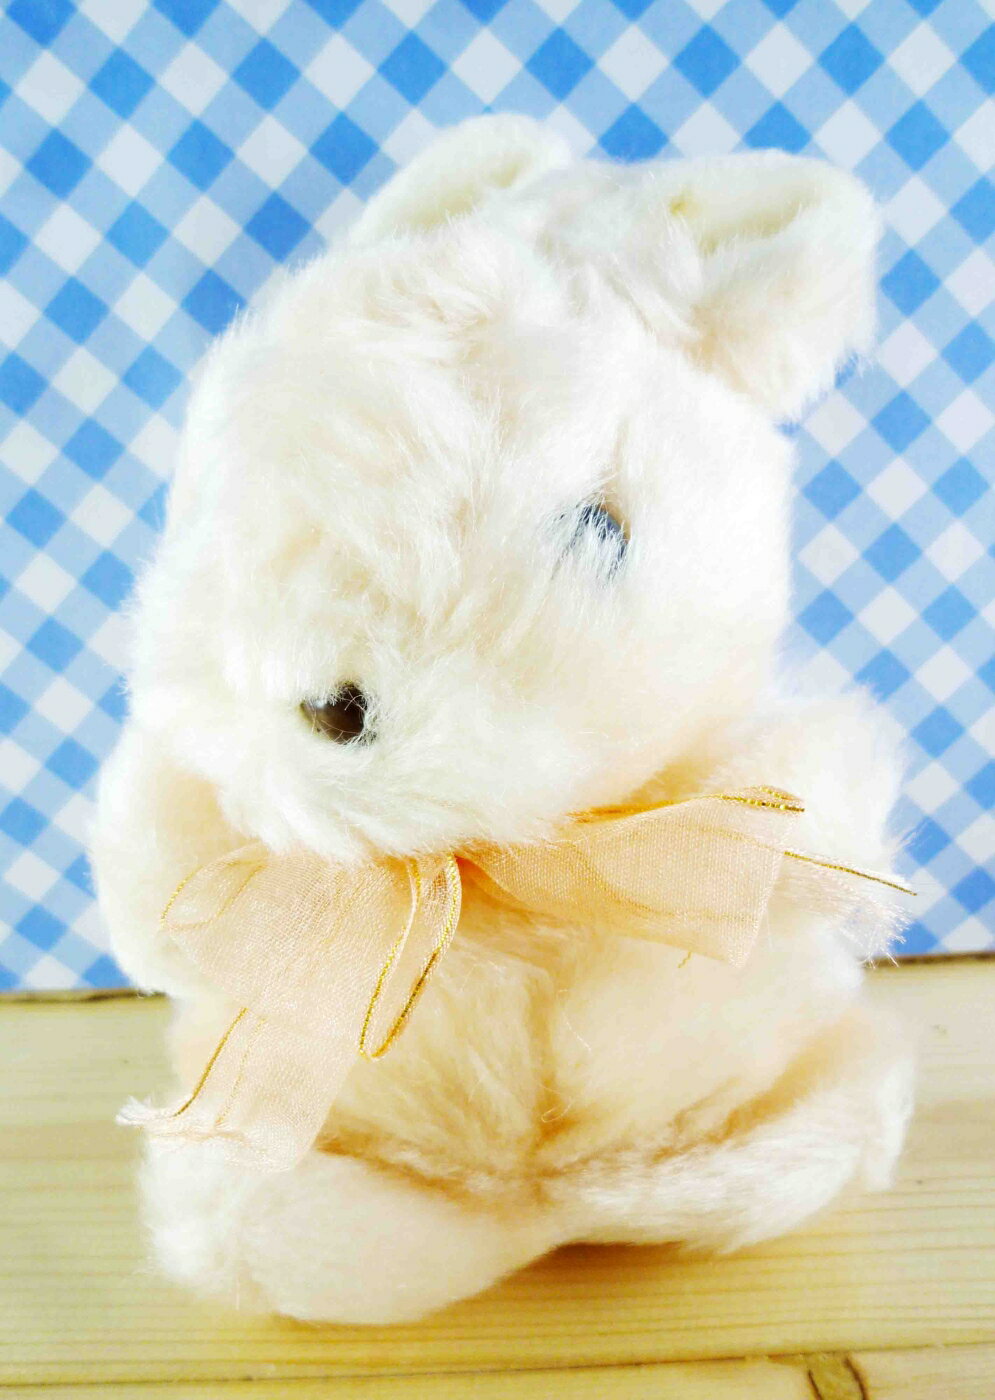 【震撼精品百貨】日本精品百貨 絨毛玩偶-兔子造型-橘毛 震撼日式精品百貨